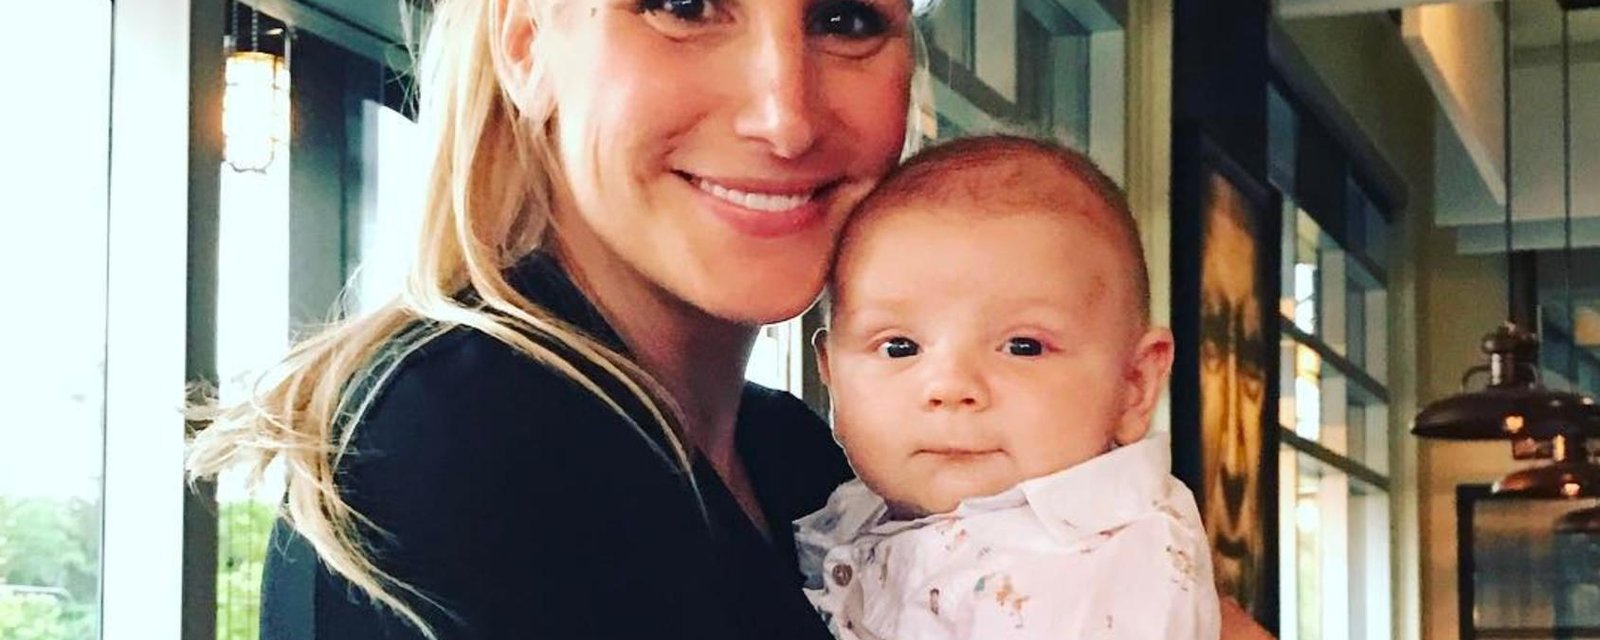 Des nouvelles photos du bébé de Mahée Paiement font un malheur sur Instagram...